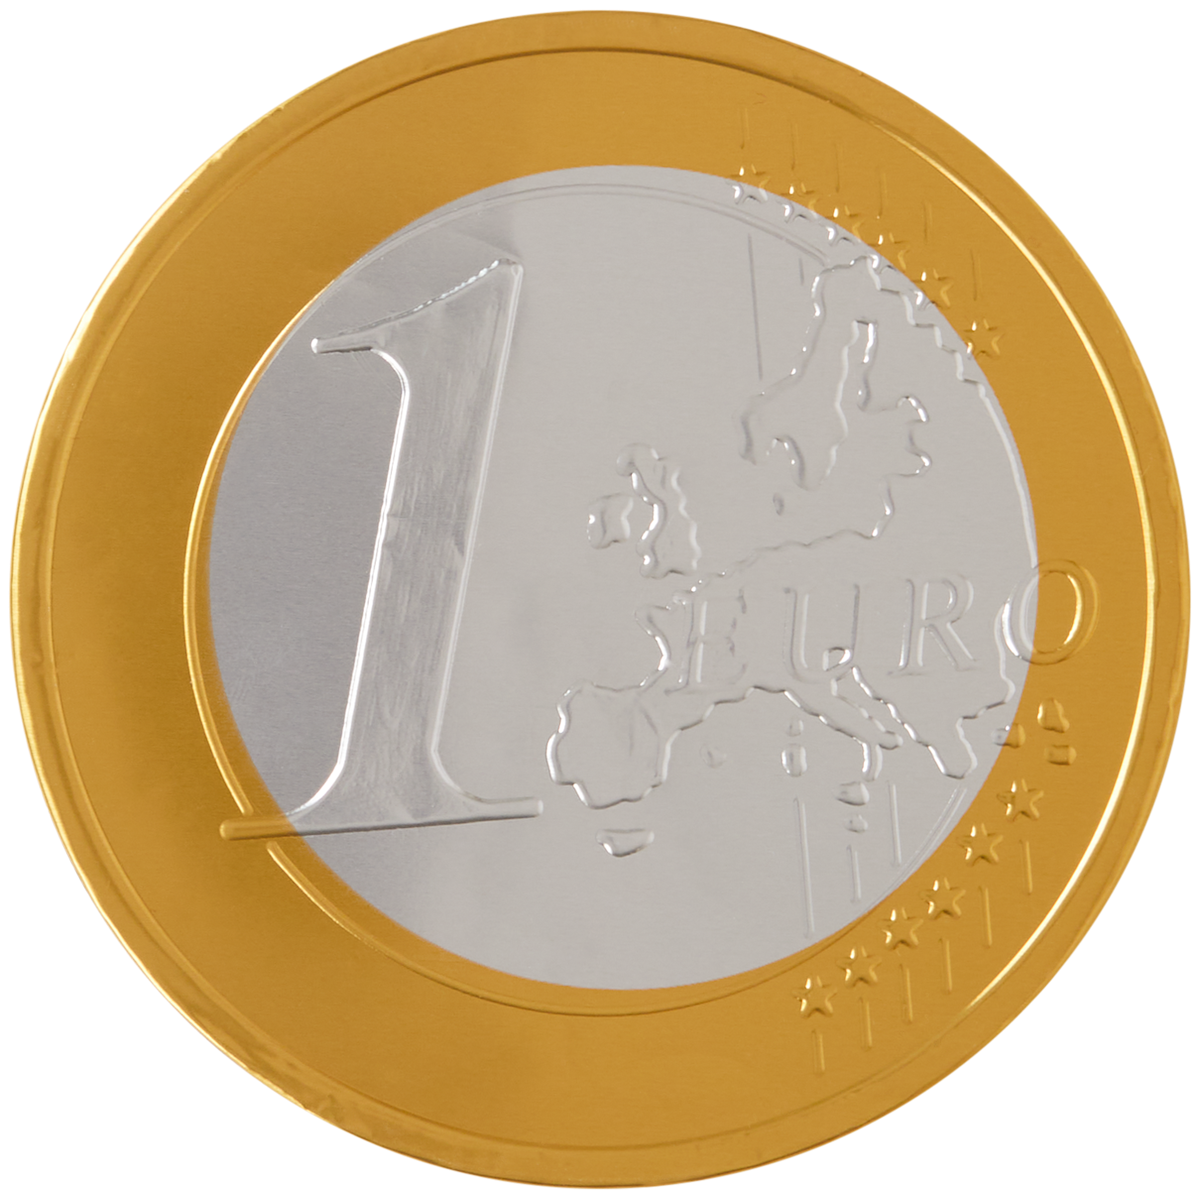 Smikkelhuys melkchocolade euromunt